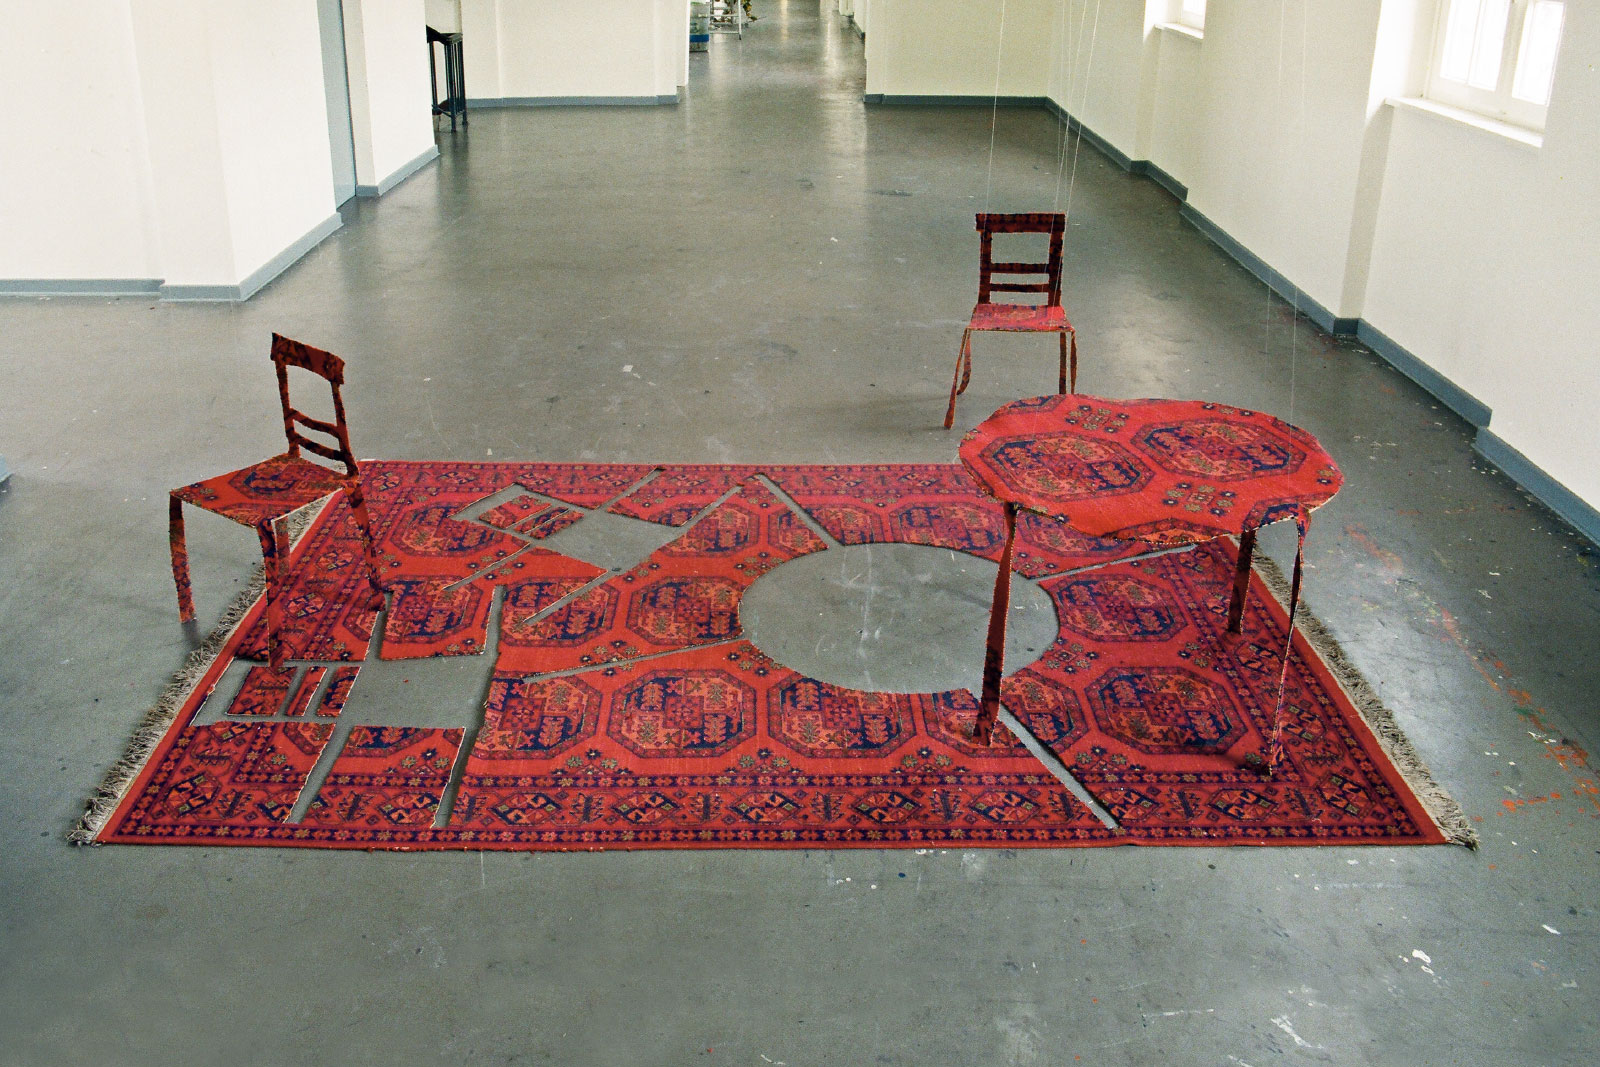 Mehrzweckwohnen,
1992 | Installation, vierteilig
gebrauchter Wohnzimmerteppich, Nylonfäden, Hartfaserplatten